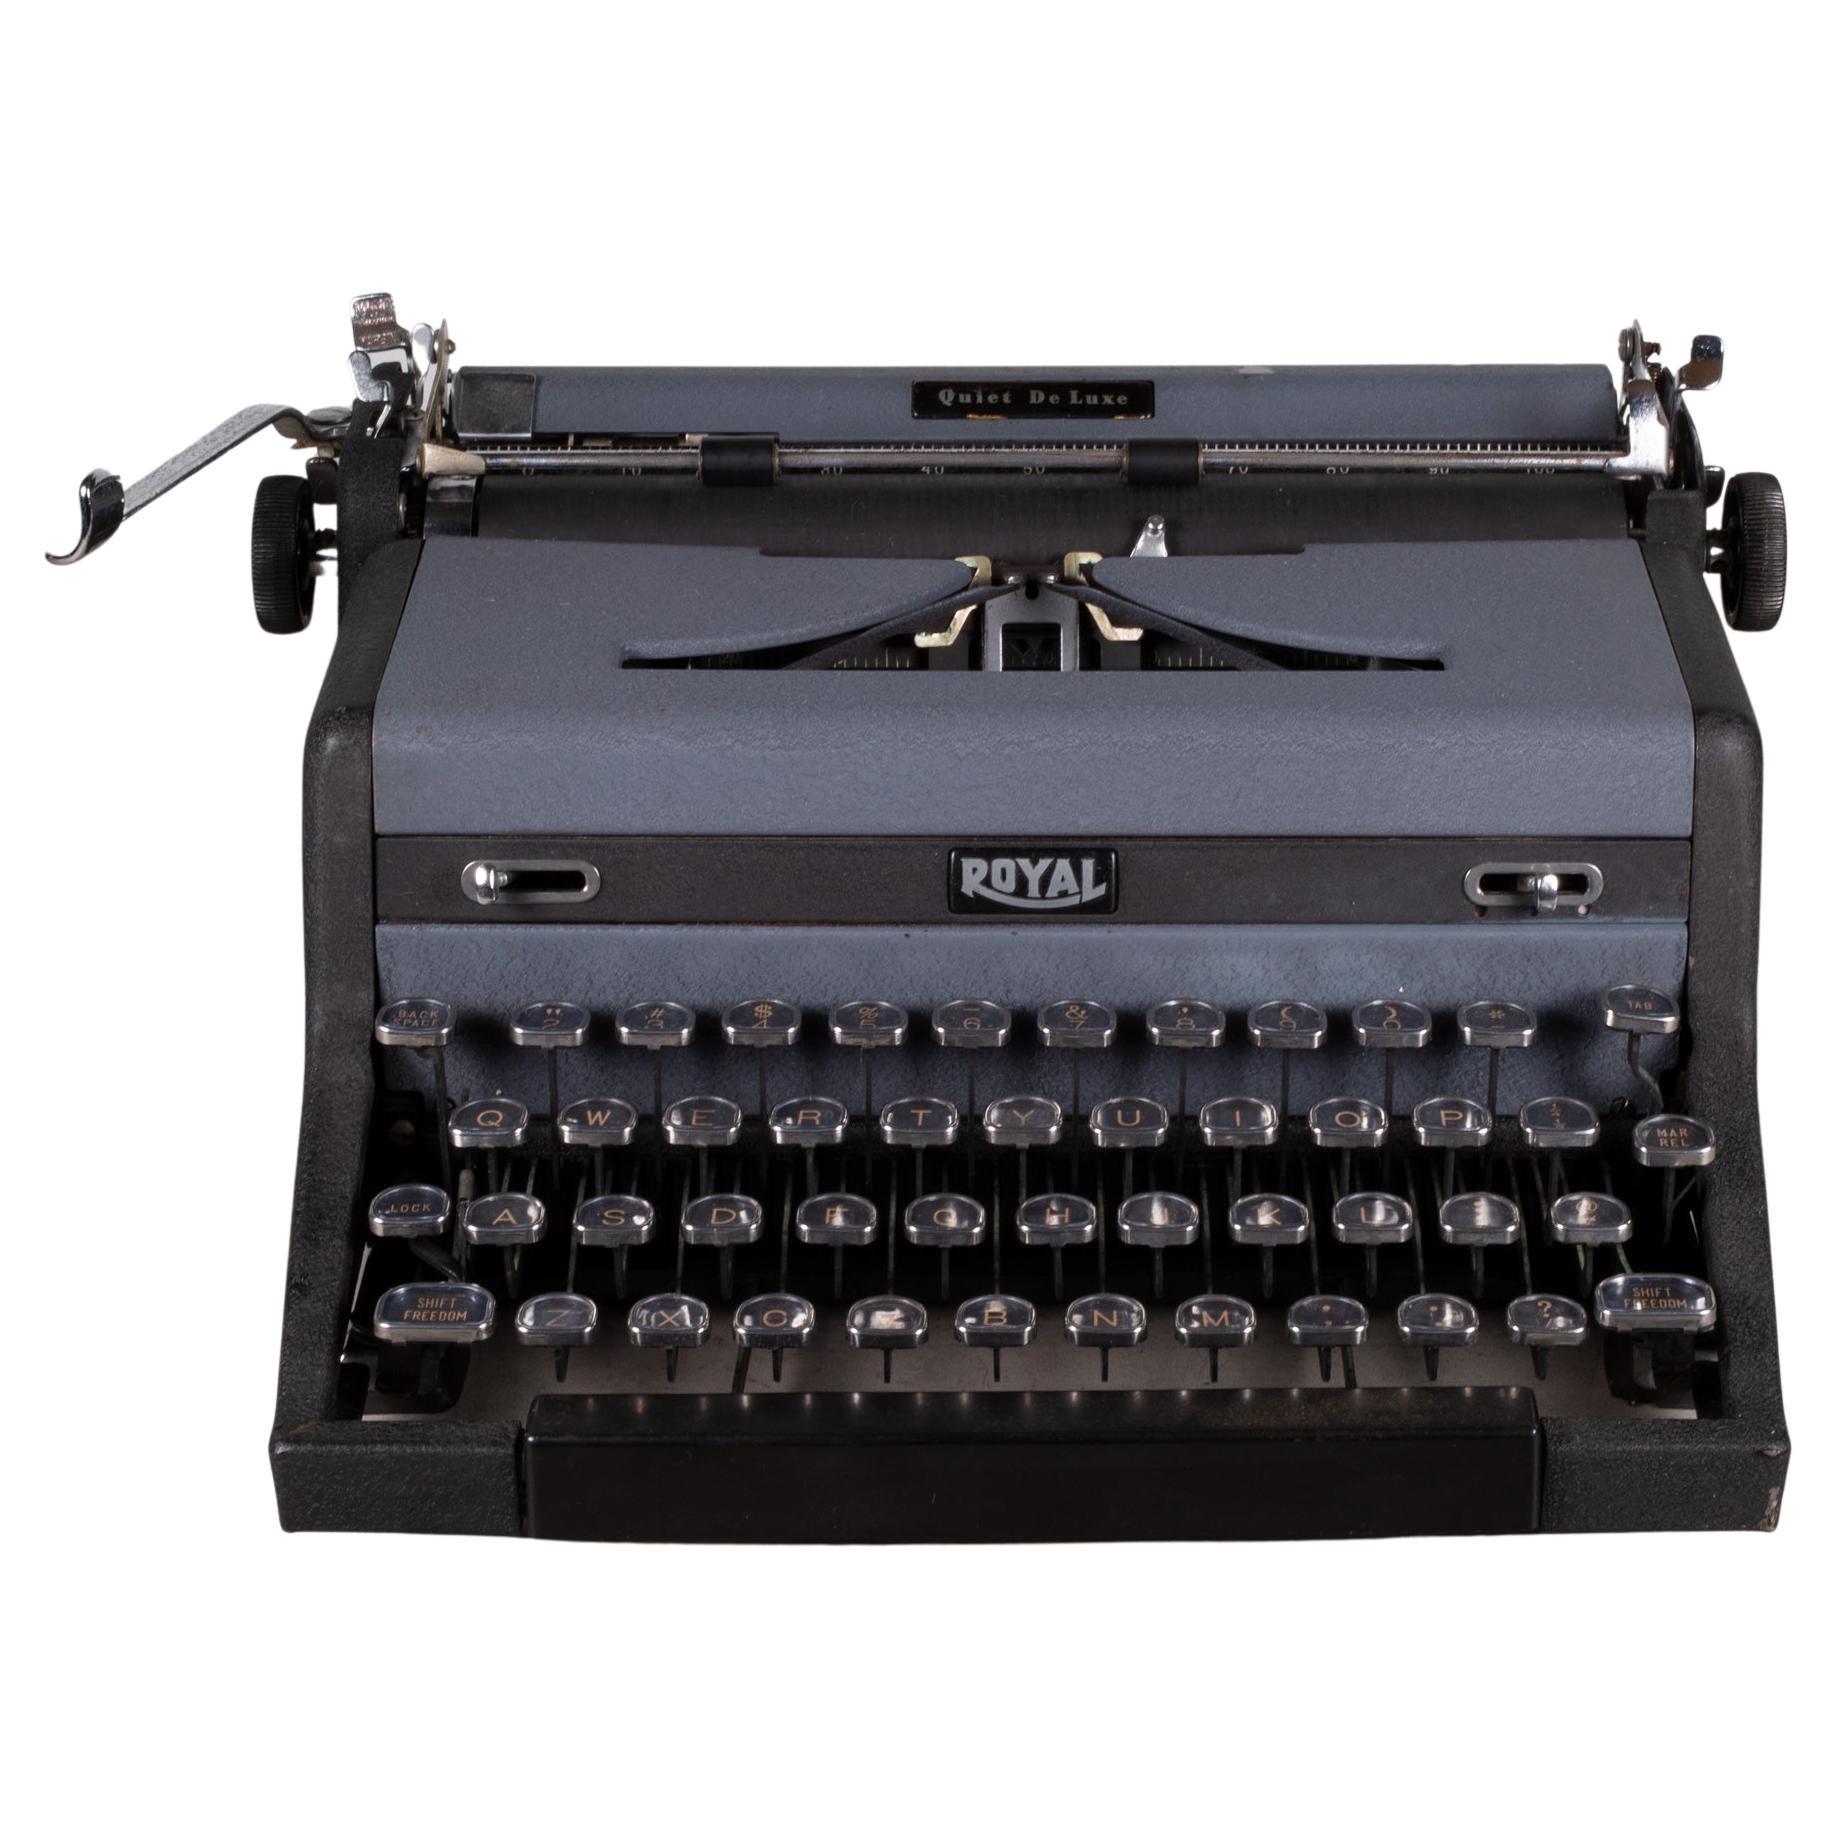 Royal Quiet DeLuxe Two Tone Typewriter und Koffer, um 1948  (KOSTENLOSER VERSAND)